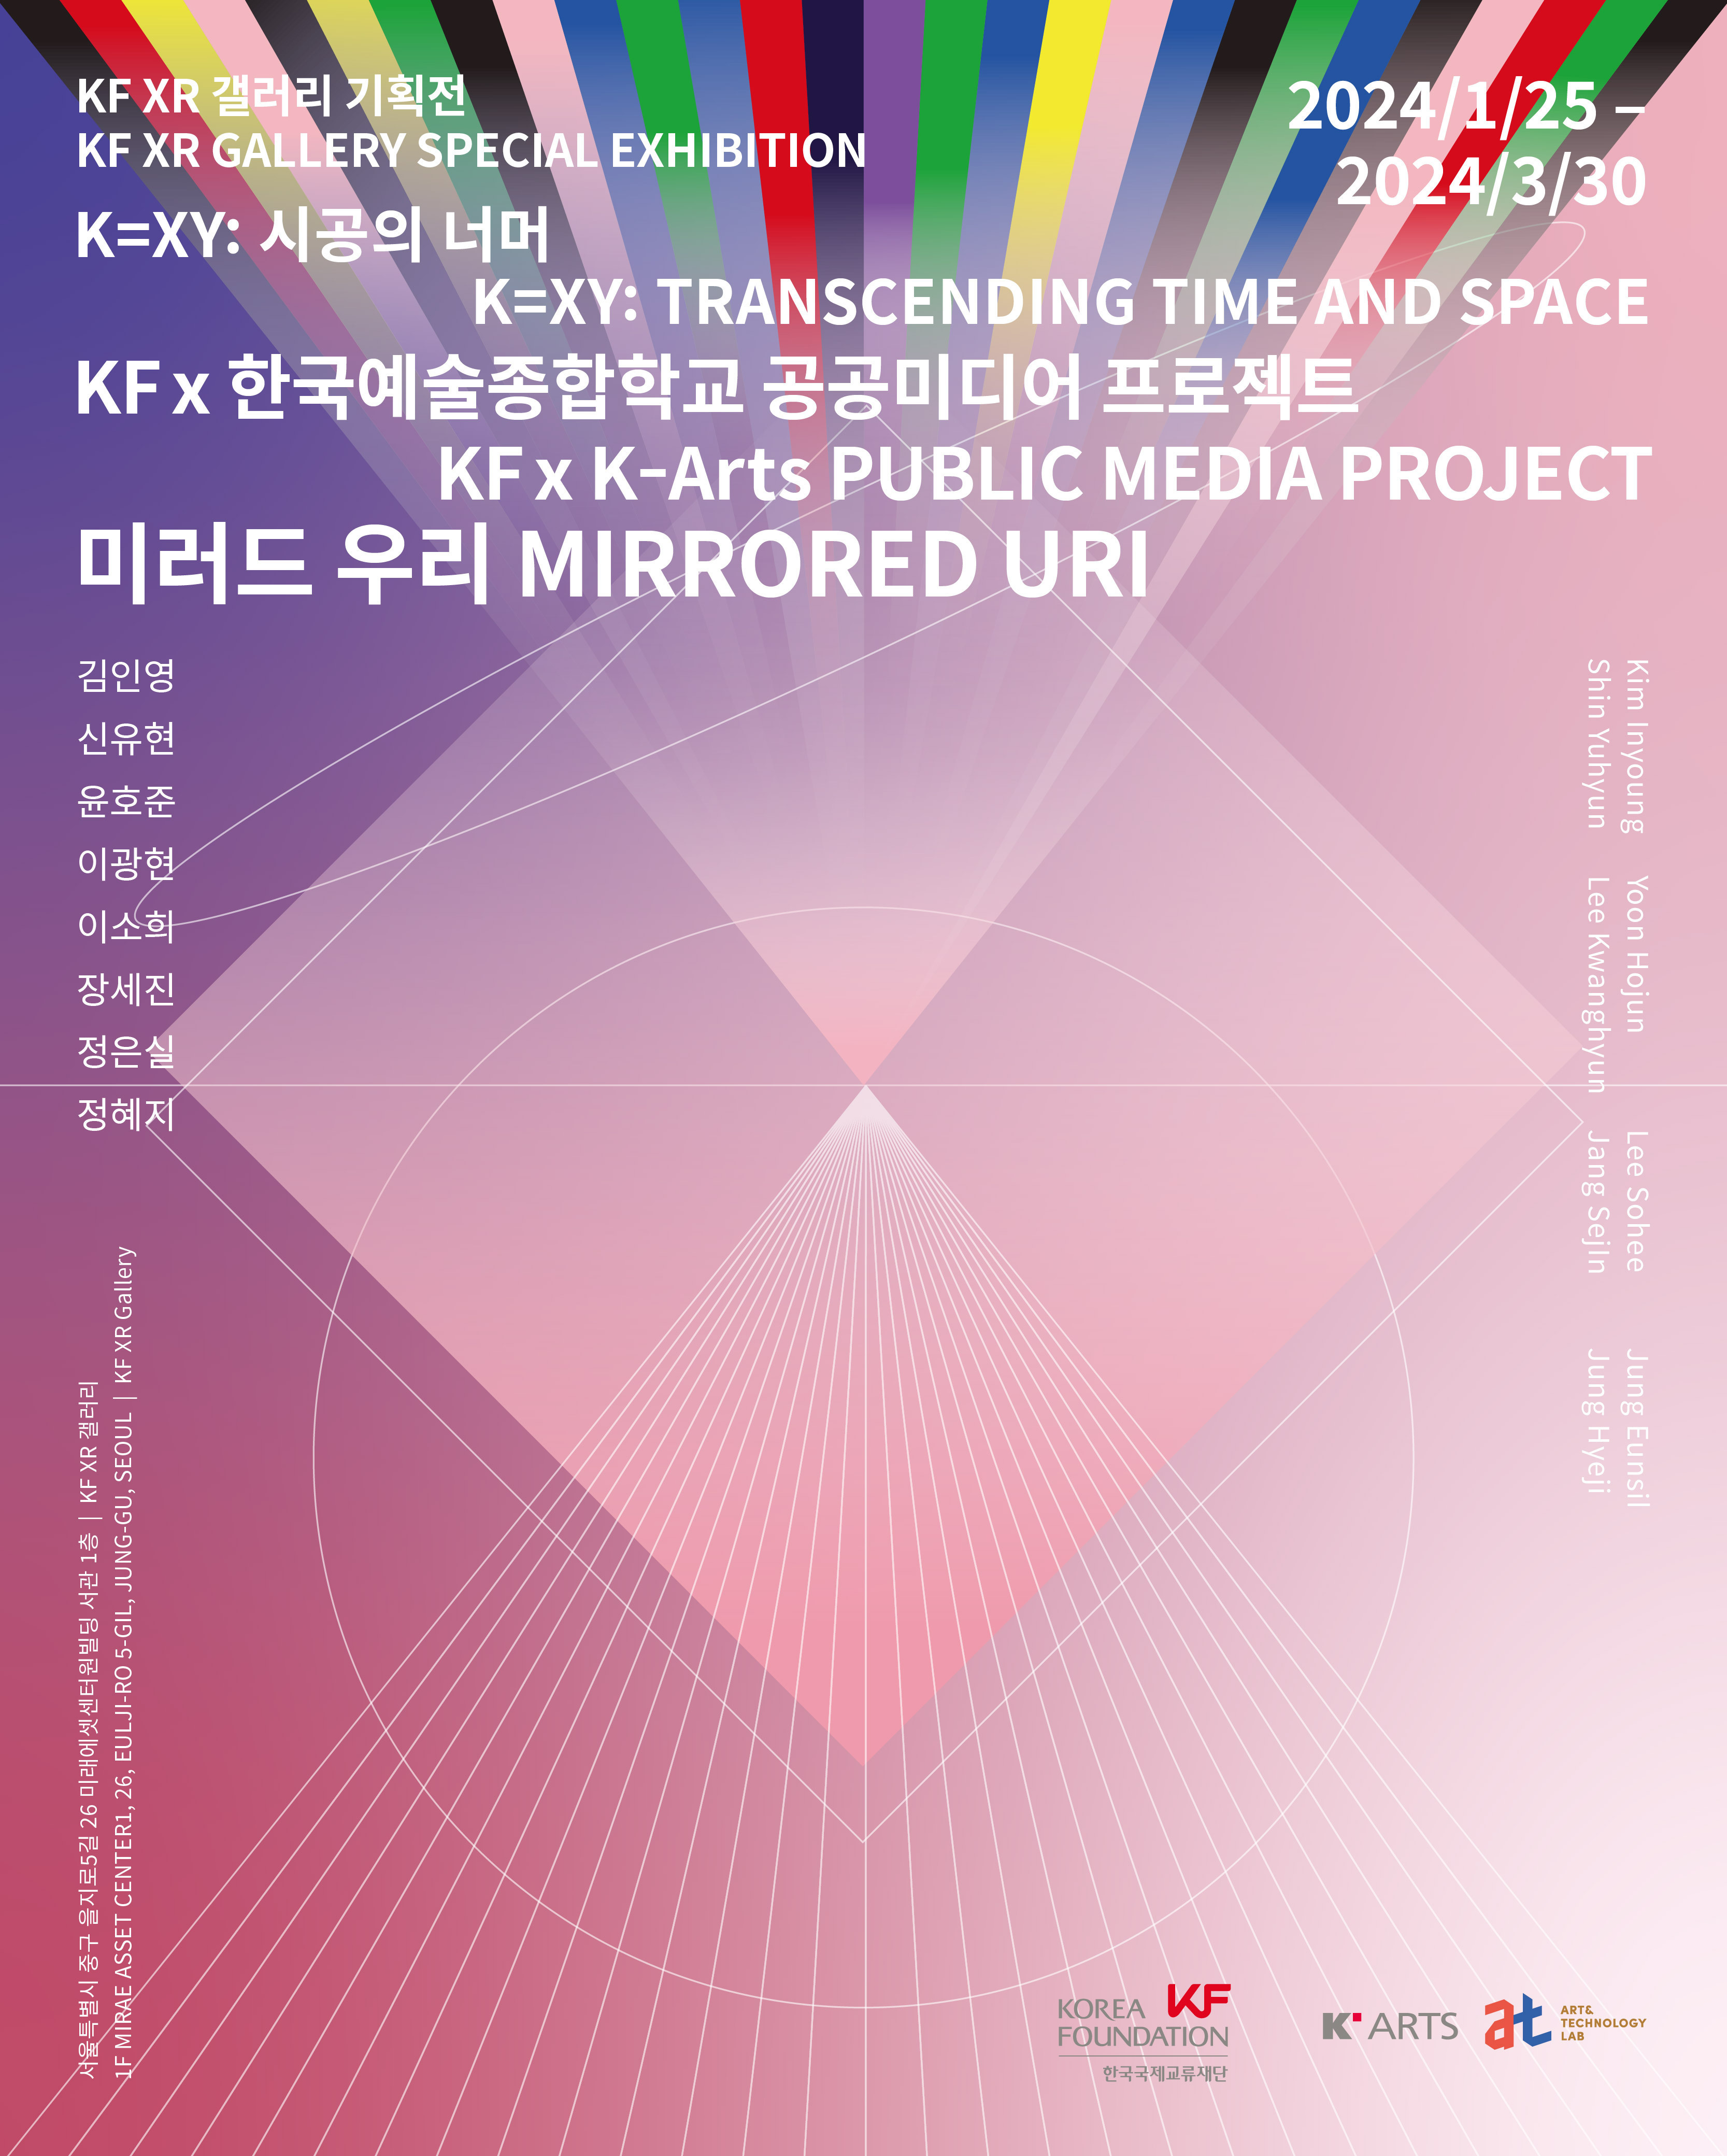 KF XR 갤러리 기획전 연계 한국예술종합학교 협력전 <미러드 우리> 개최